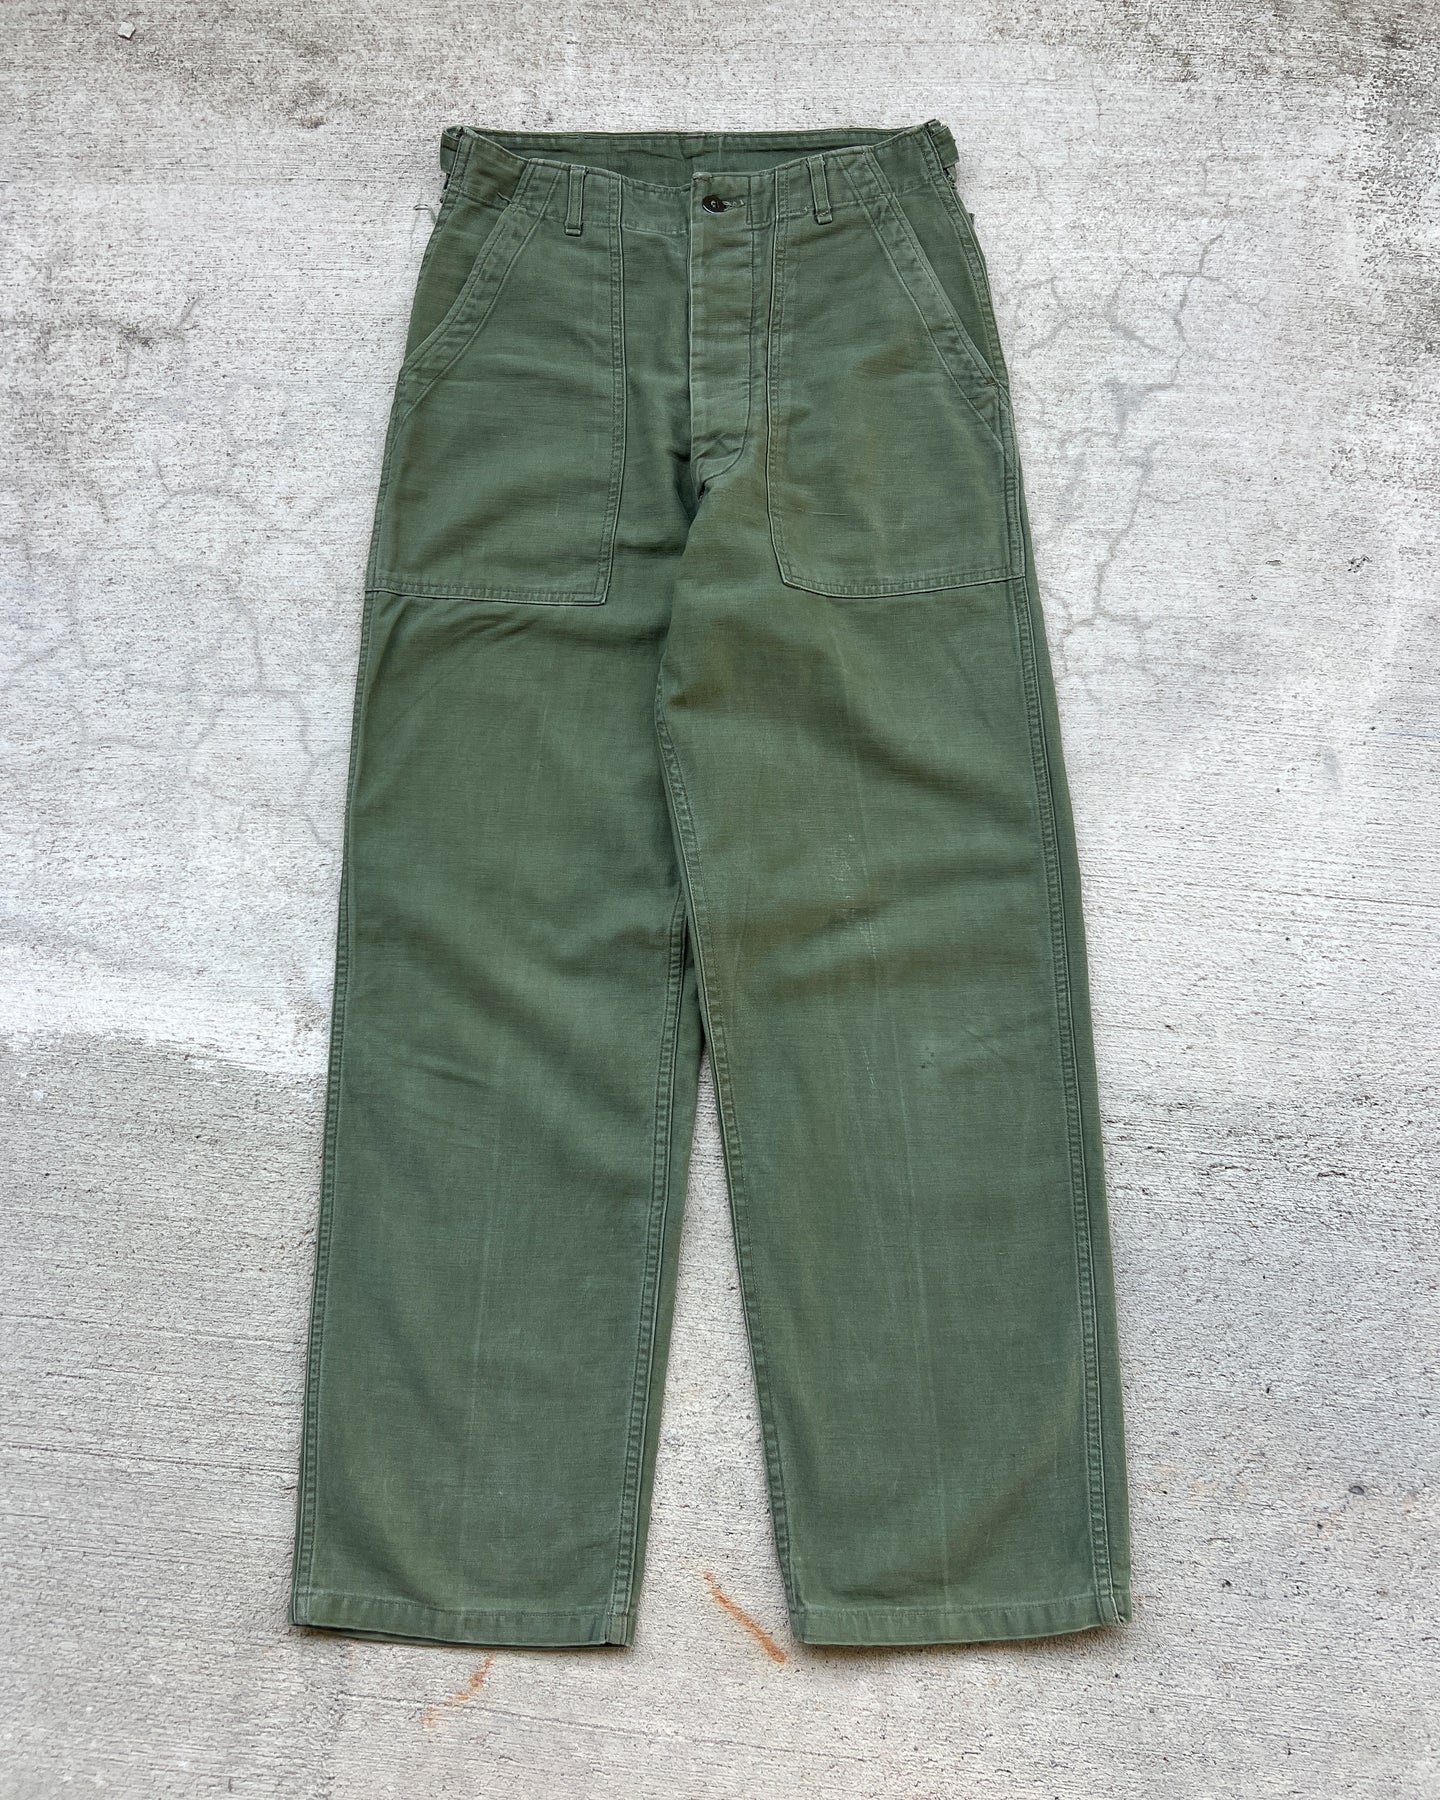 1970s OG-107 Fatigue Army Pants - 29 x 31